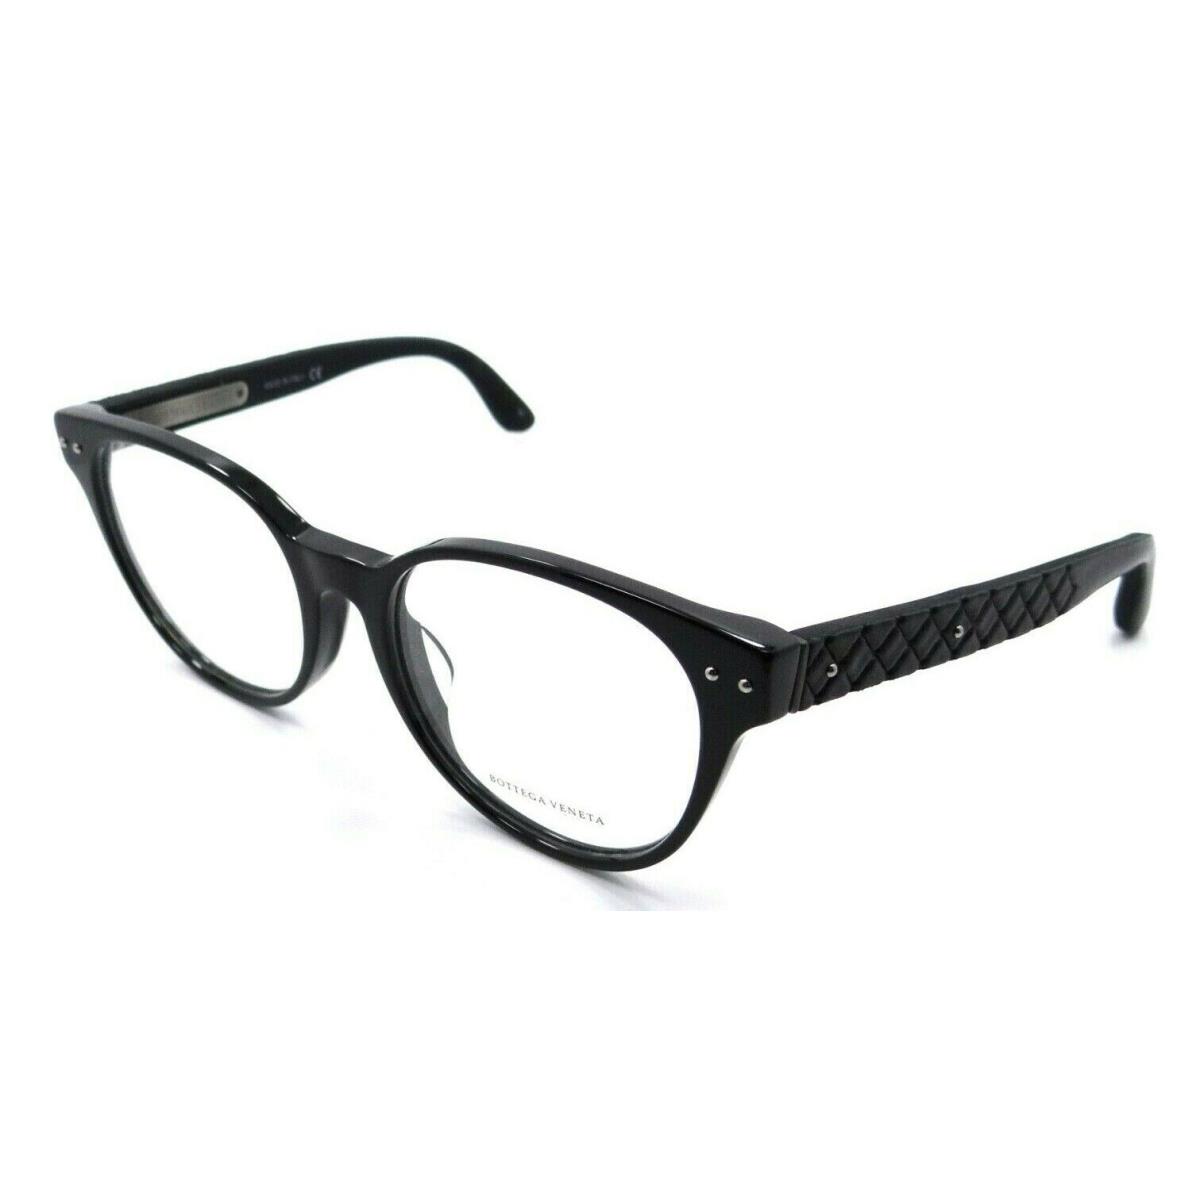 Bottega Veneta Eyeglasses Frames BV0046OA 001 52-18-145 Black Italy Asian Fit